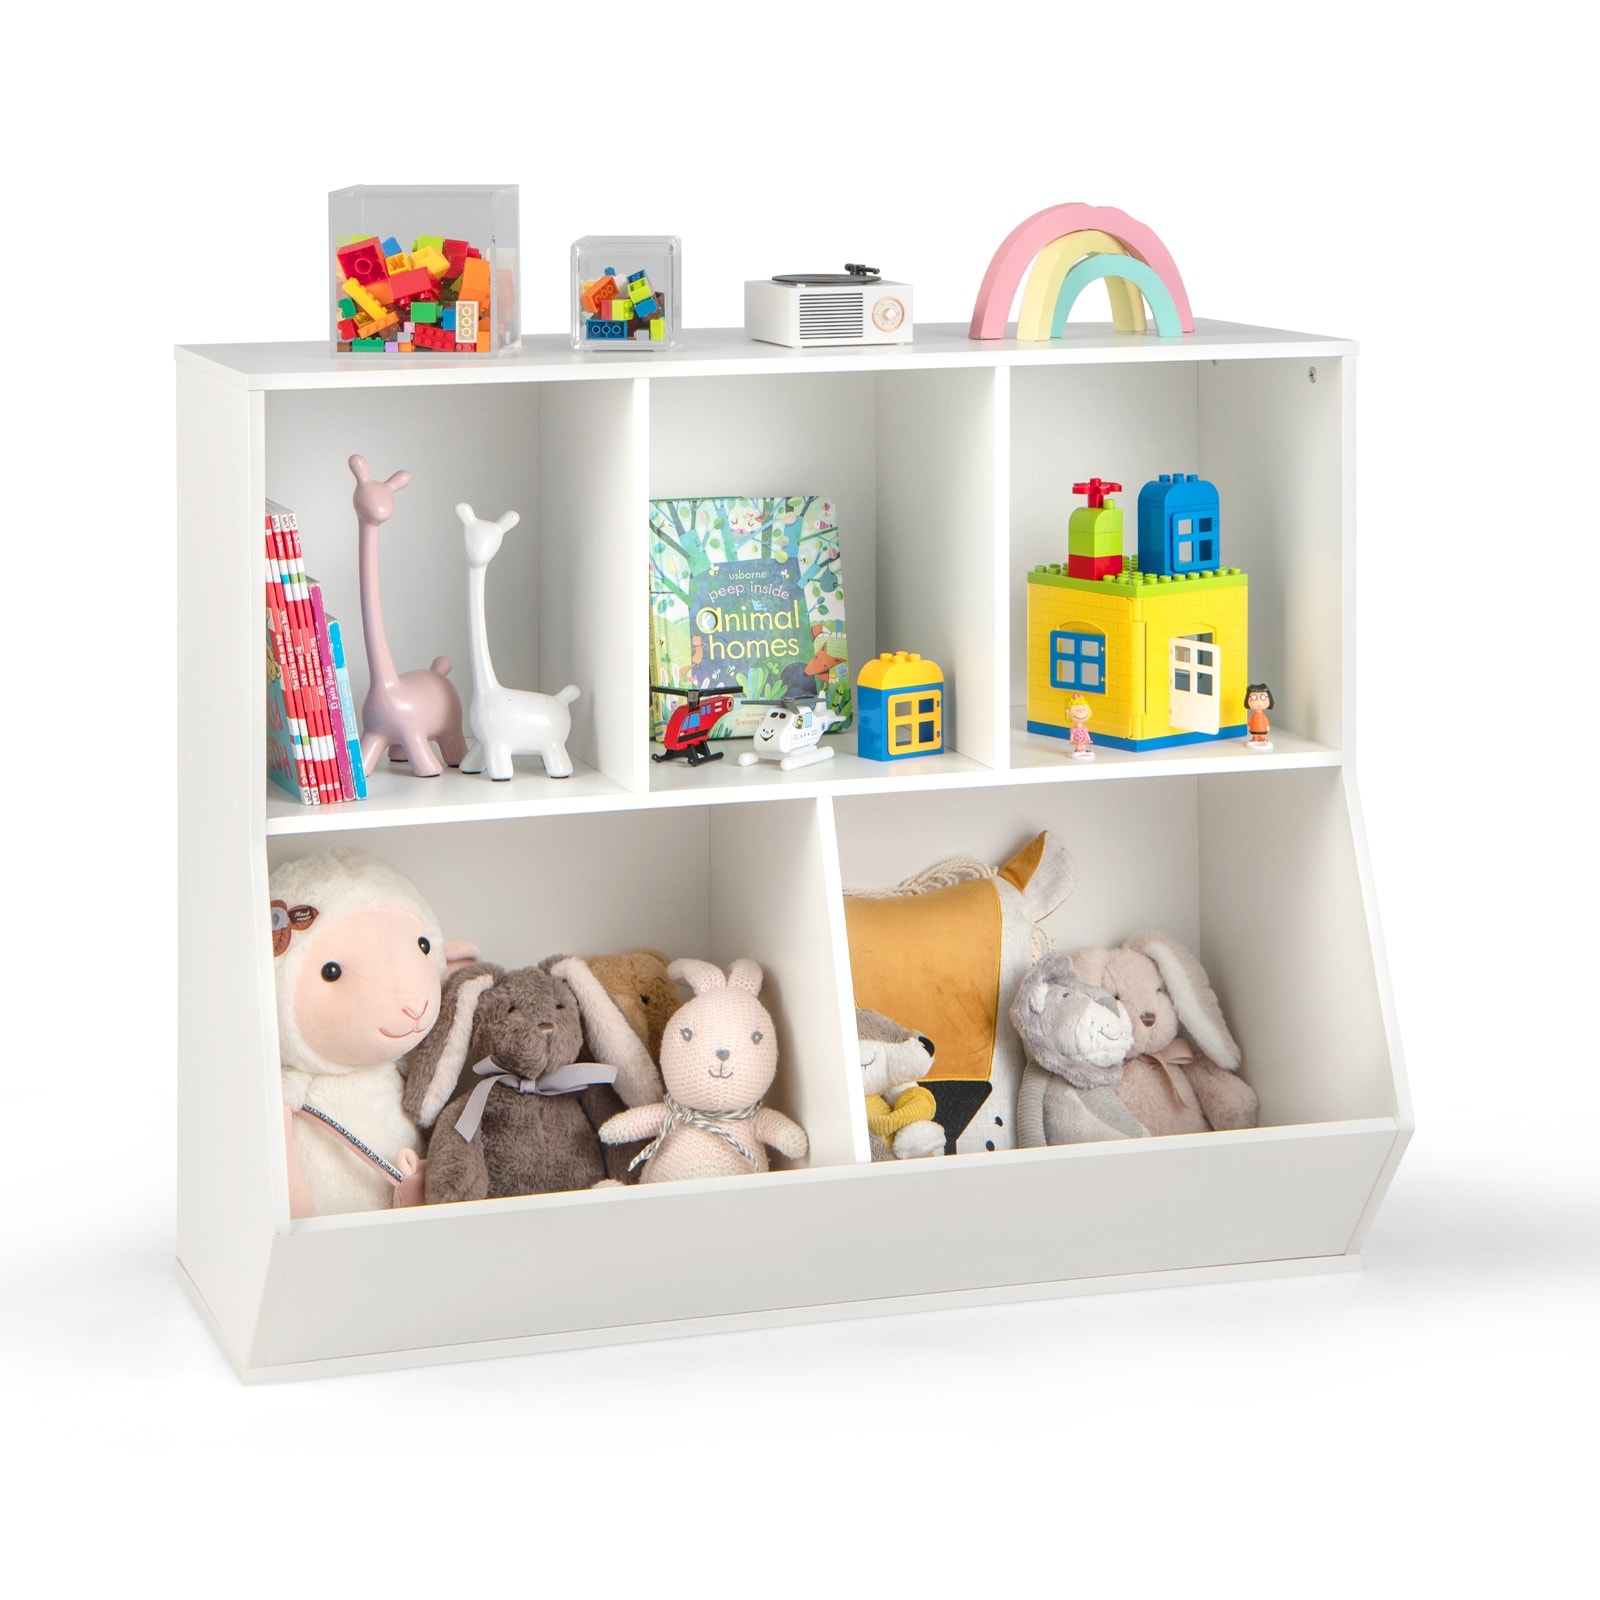 Costway Wooden Kids Toy Storage Organizer Bookcase Cabinet Bookshelf W/ 8 Storage  Boxes